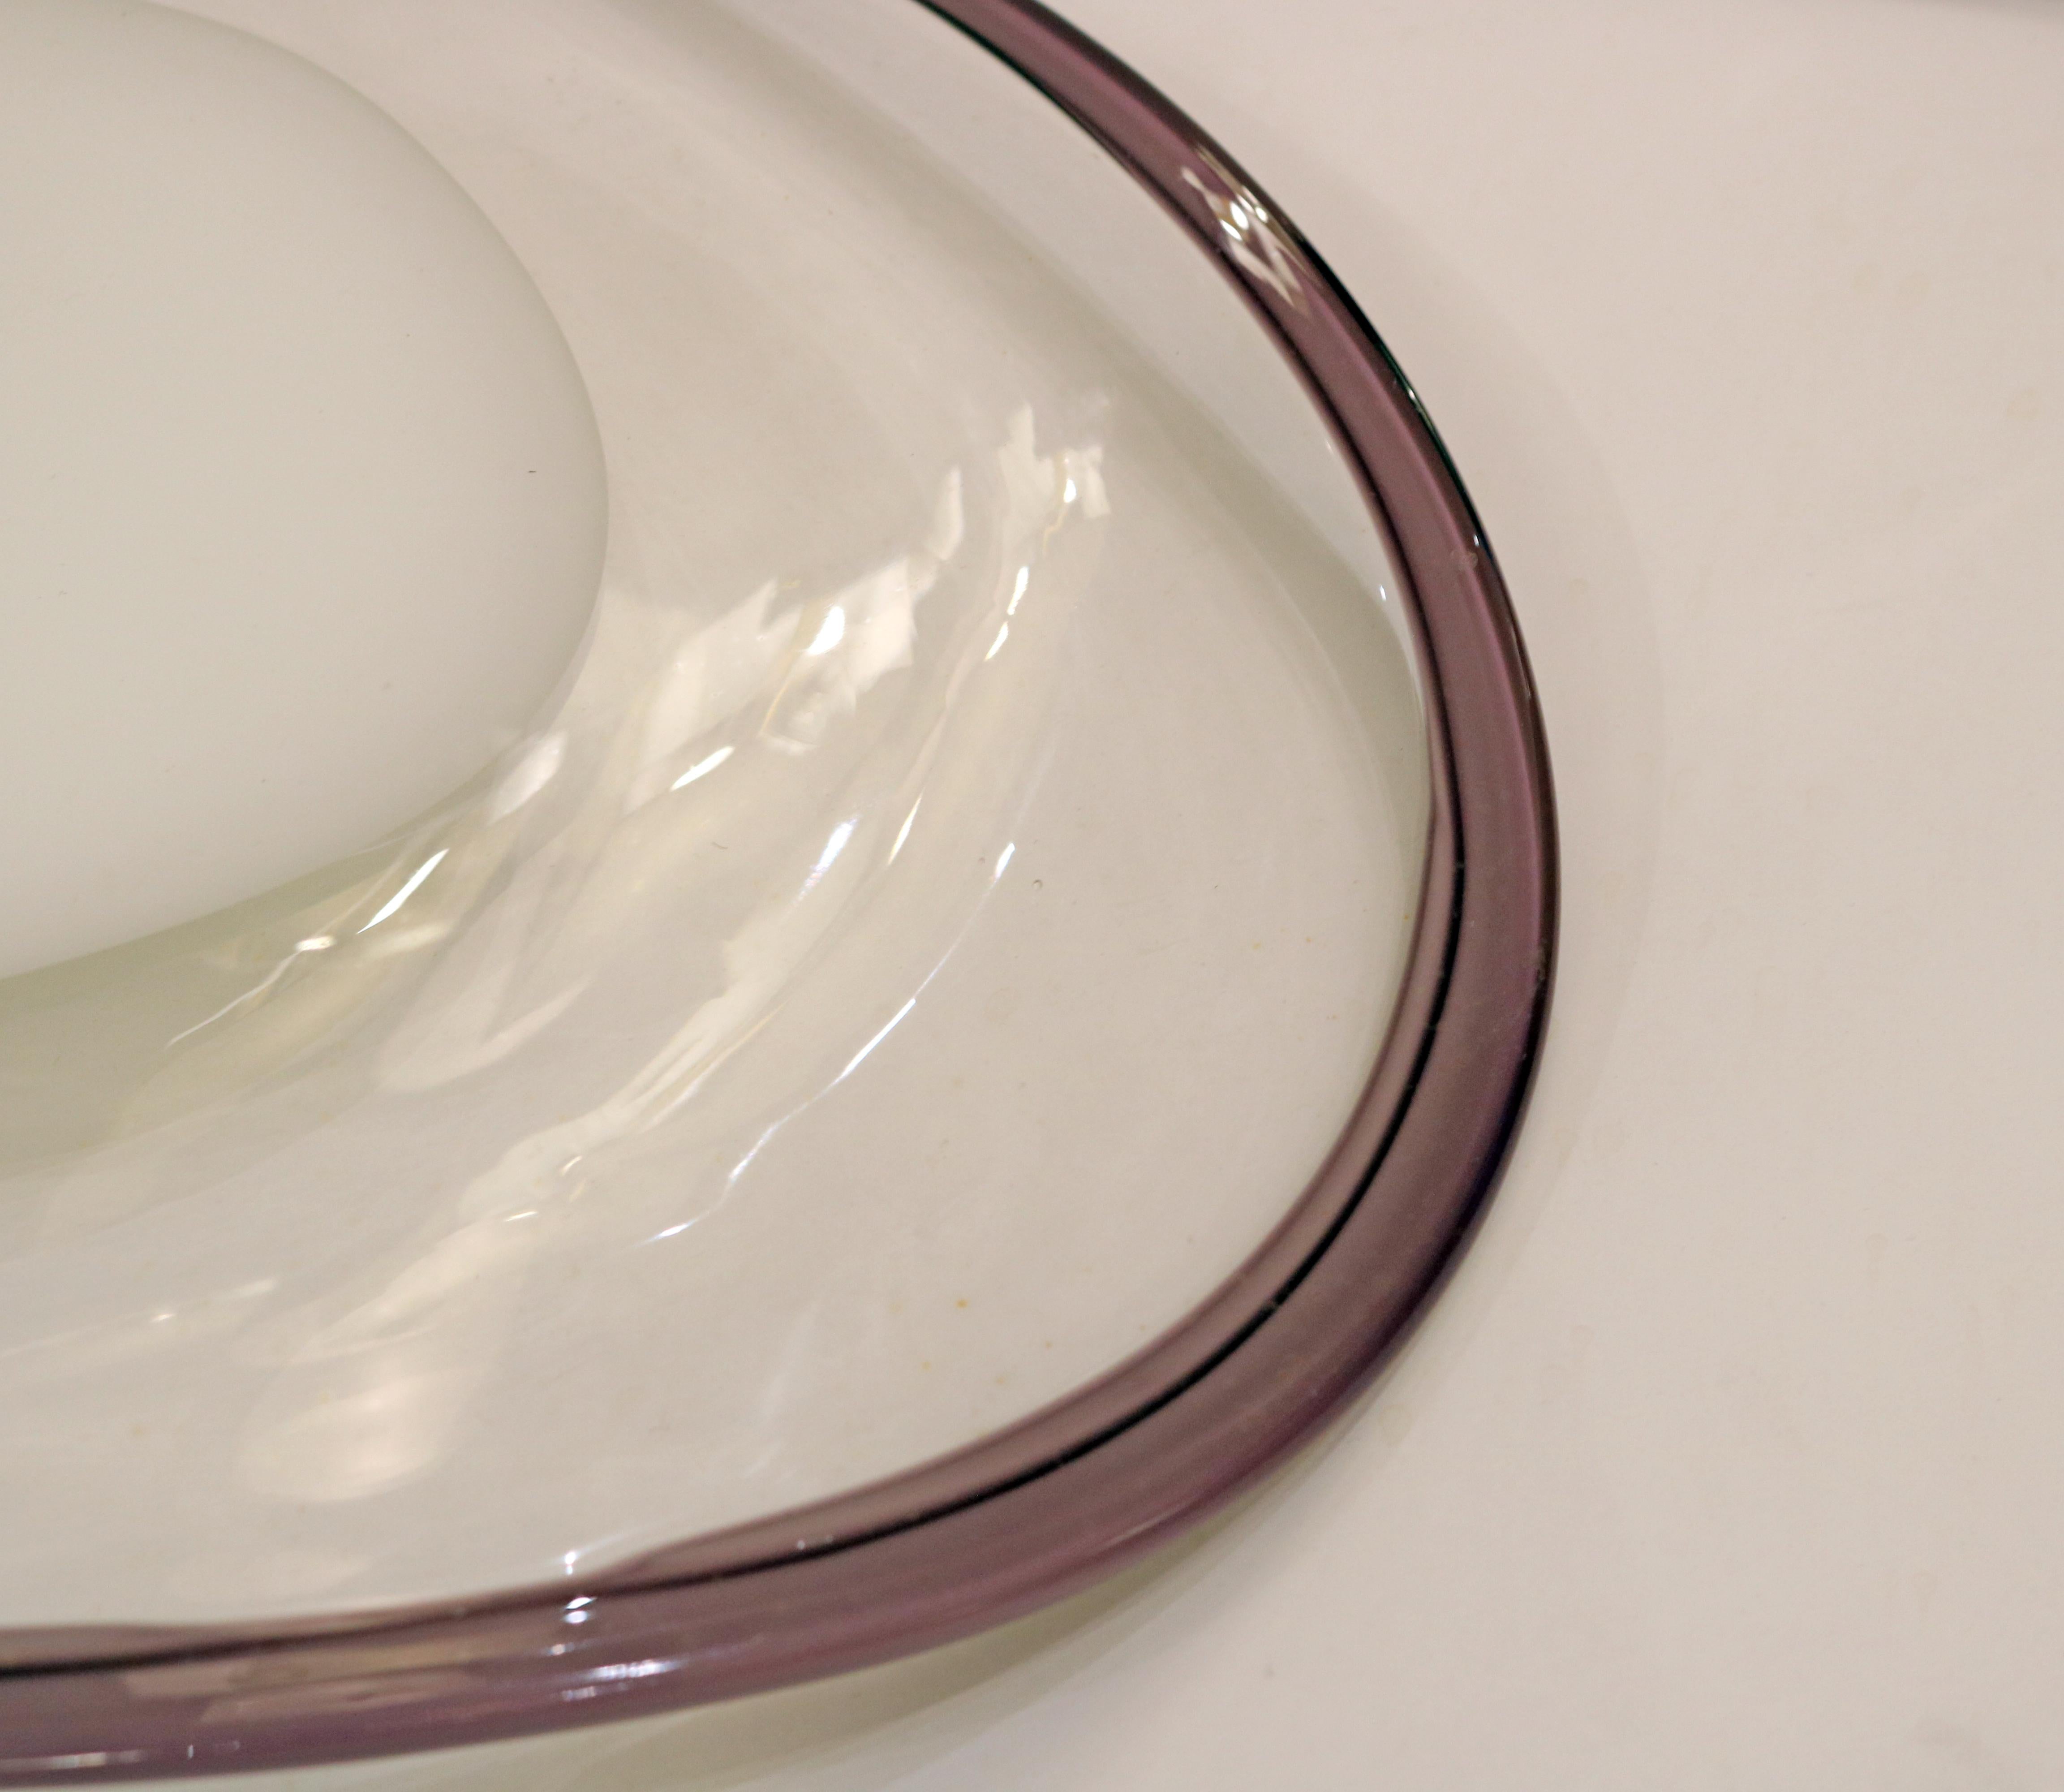 Paire de coupes creuses en verre de Murano tricolore de forme ovale à l'extrémité légèrement incurvée. Le centre présente une surface blanche opaque, entourée d'un verre transparent et encadrée d'un bord de verre violet vibrant. Sa forme unique